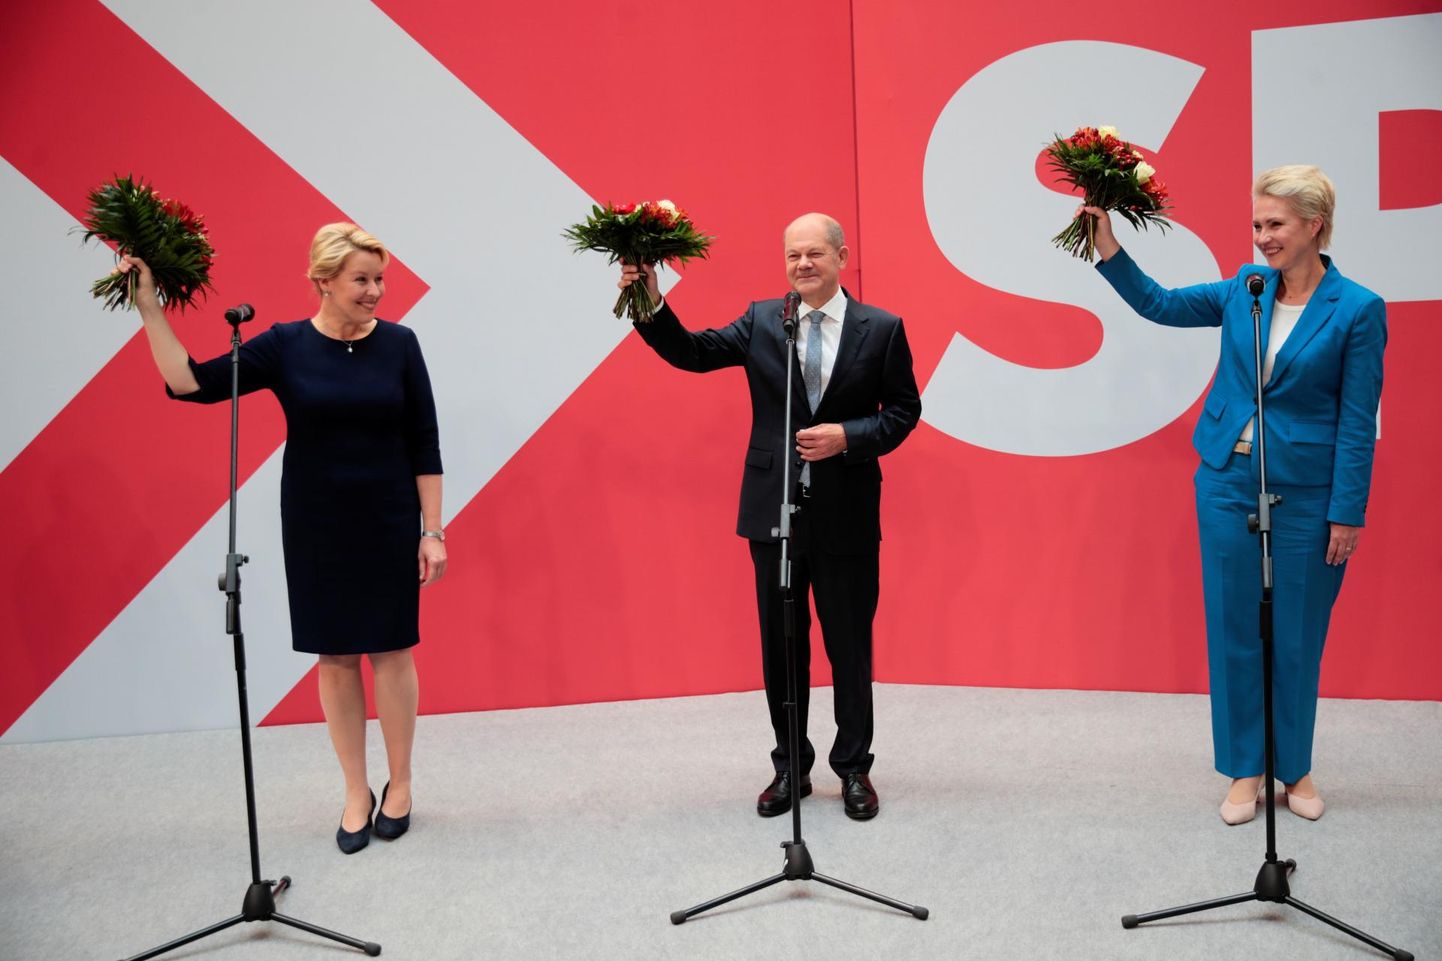 SPD tähistas kolmikvõitu eile hommikul Berliinis oma peakorteris Willy-Brandt-Hausis, kus üldvalimistel võidutsenud kantslerikandidaadi Olaf Scholzi (keskel) kõrval astusid lavale pühapäeval kahel liidumaal peetud valimiste võitjad: Mecklenburg-Vorpommerni senine peaminister Manuela Schwesig (paremal), kelle juhtumisel kogus SPD seal ligi 40 protsenti häältest, ning Berliini linnapeakandidaat Franziska Giffey, kes vedas SPD pealinnas 21,4 protsendiga häältest napile võidule roheliste üle. 